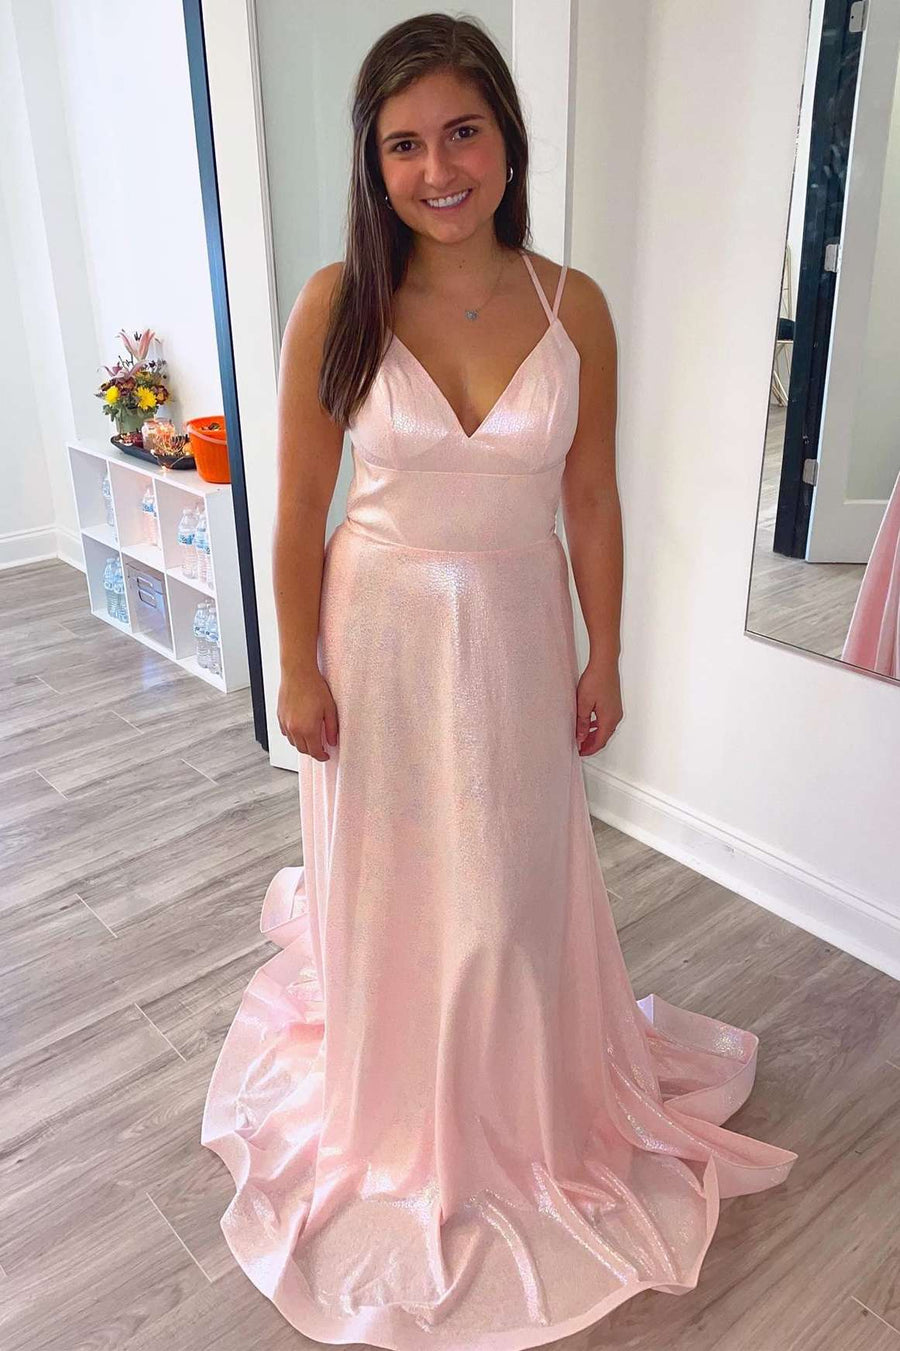 Pink V-Neck Lace-Up Back Long Prom Dress